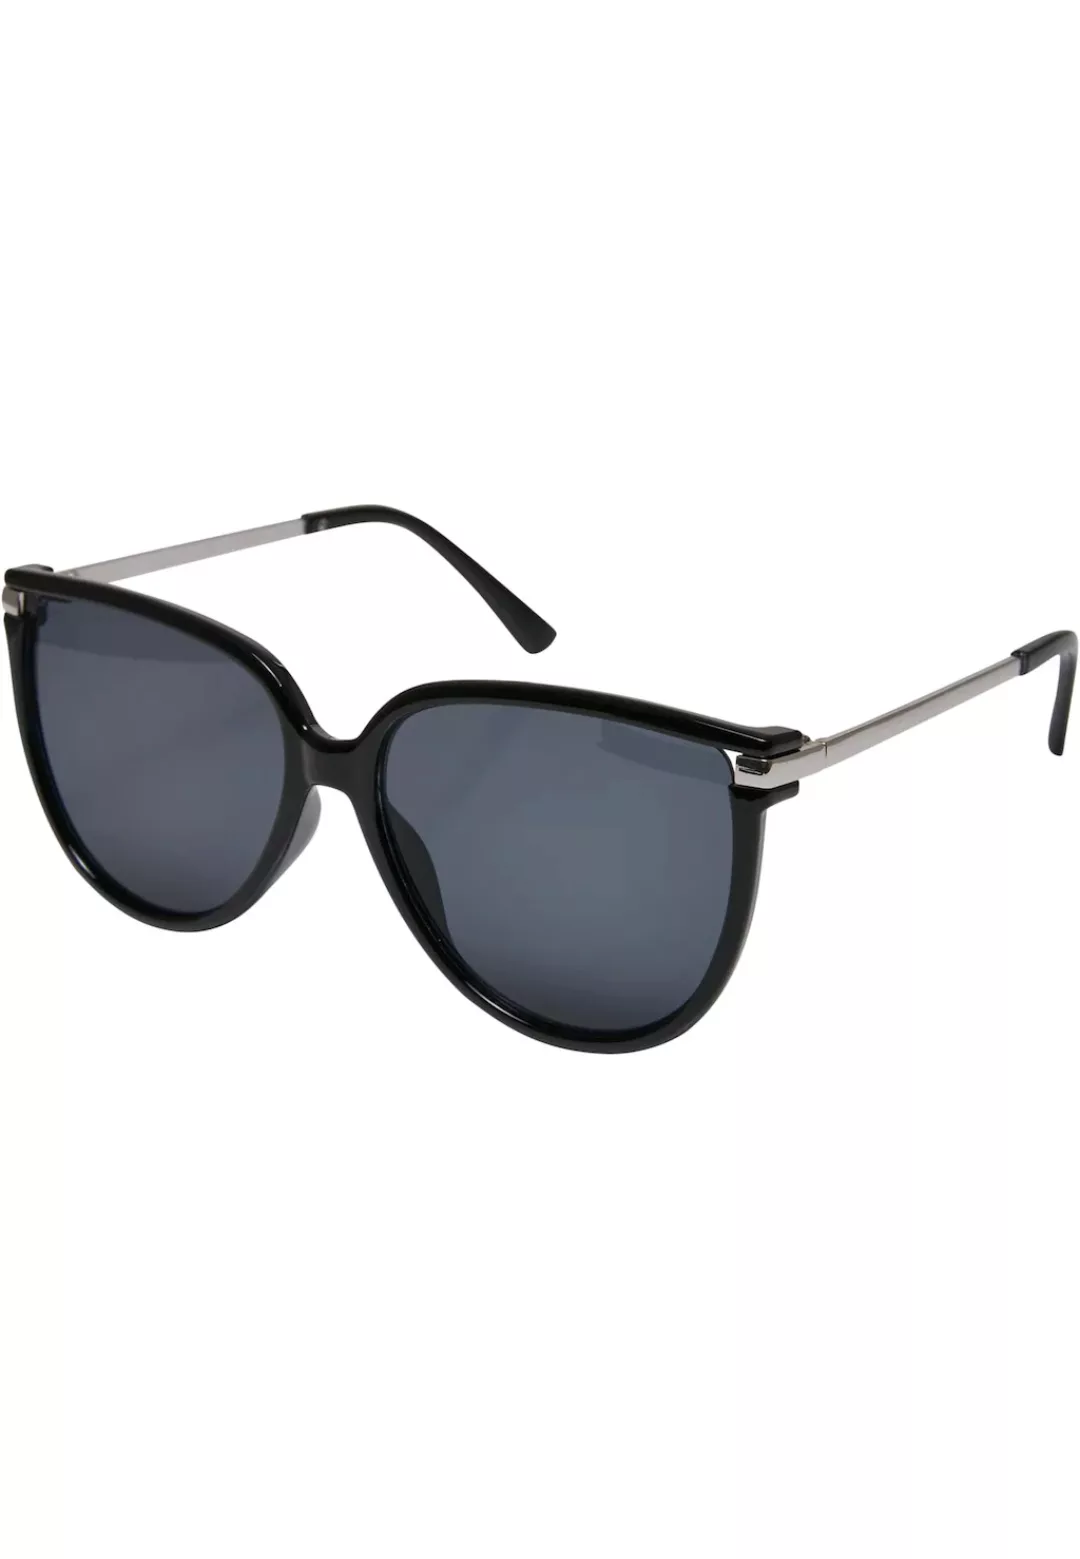 URBAN CLASSICS Sonnenbrille "Unisex Sunglasses Milano" günstig online kaufen